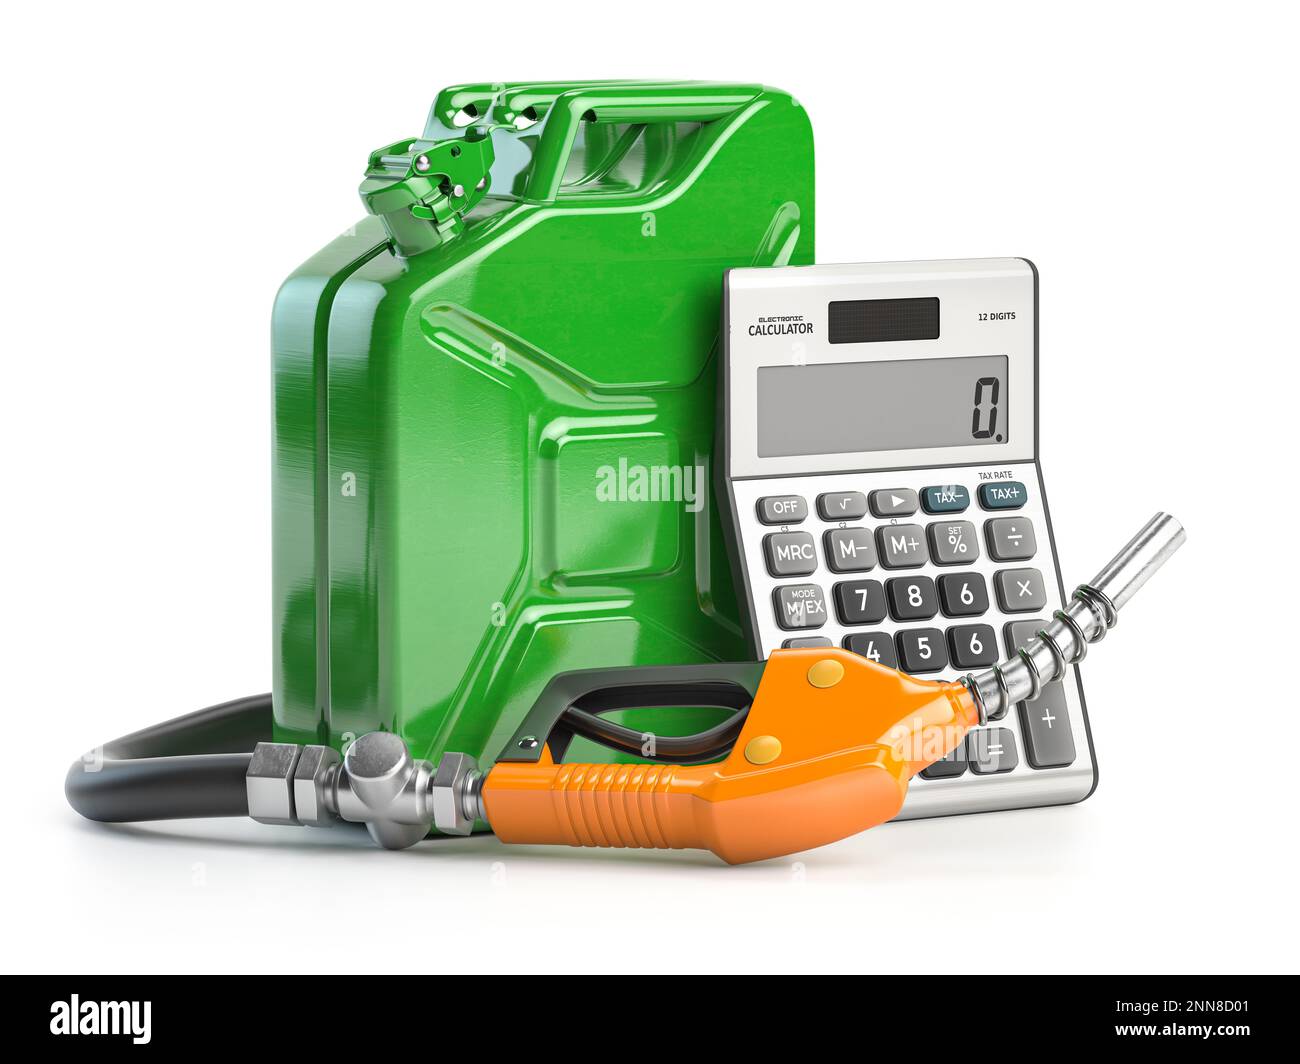 Concetto di calcolo del costo del carburante. Ugello pompa gas, canister e calcolatrice isolata su bianco. illustrazione 3d Foto Stock